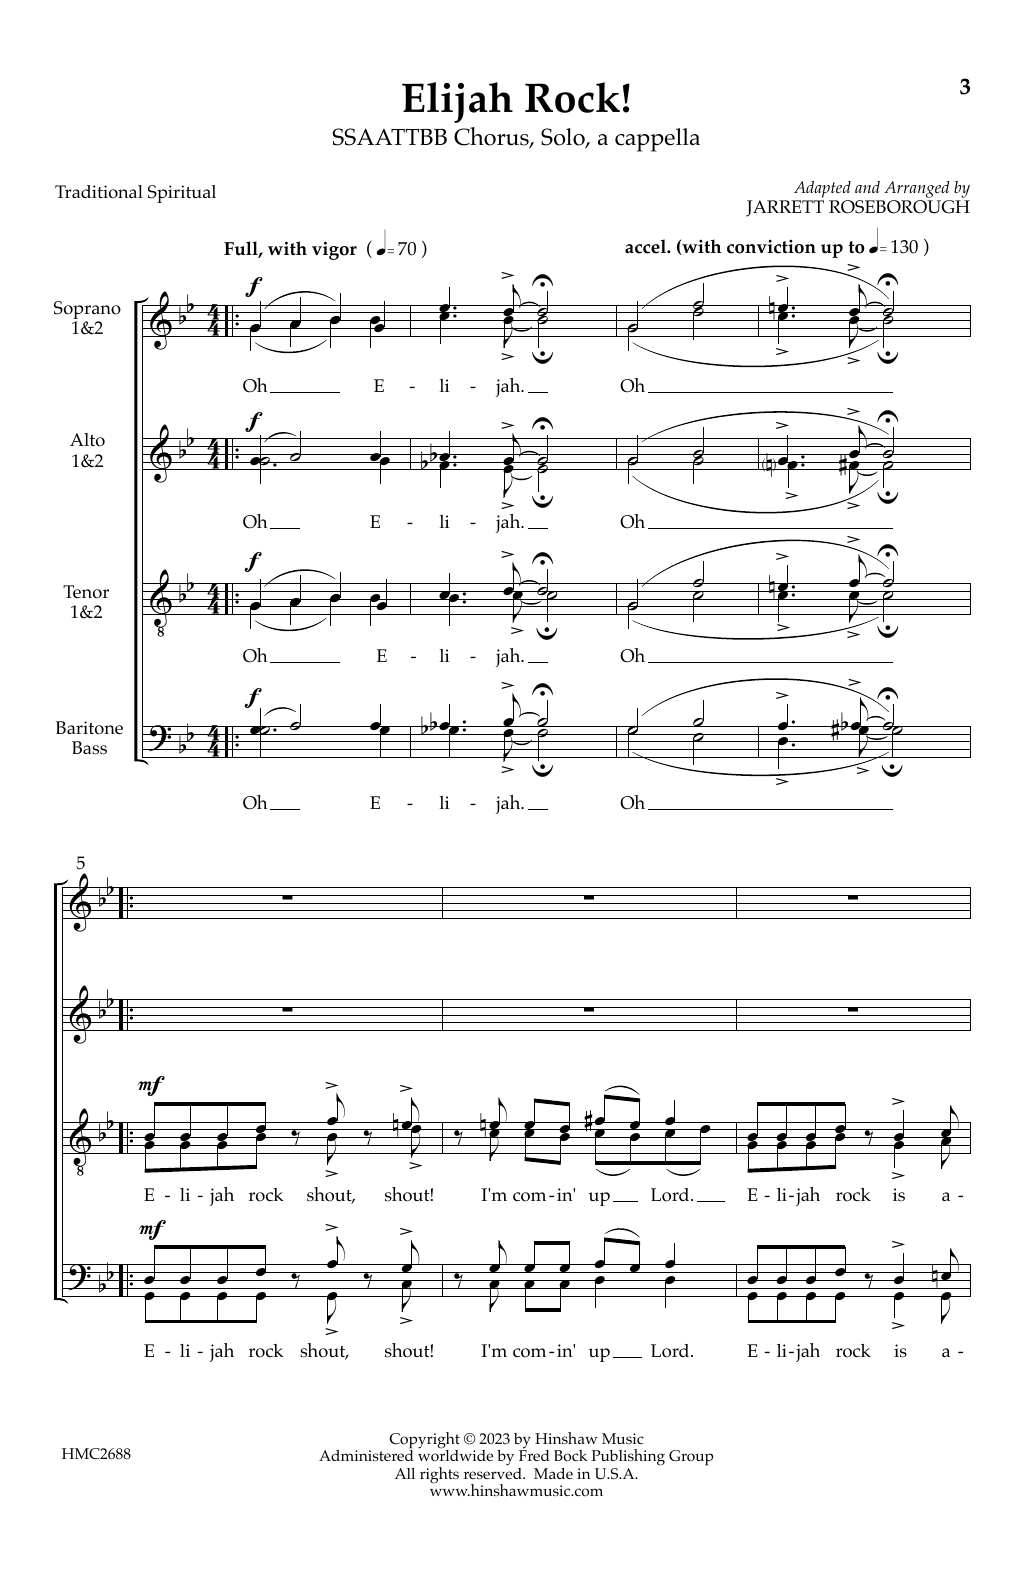 Download Jarrett Roseborough Elijah Rock! Sheet Music and learn how to play SATB Choir PDF digital score in minutes